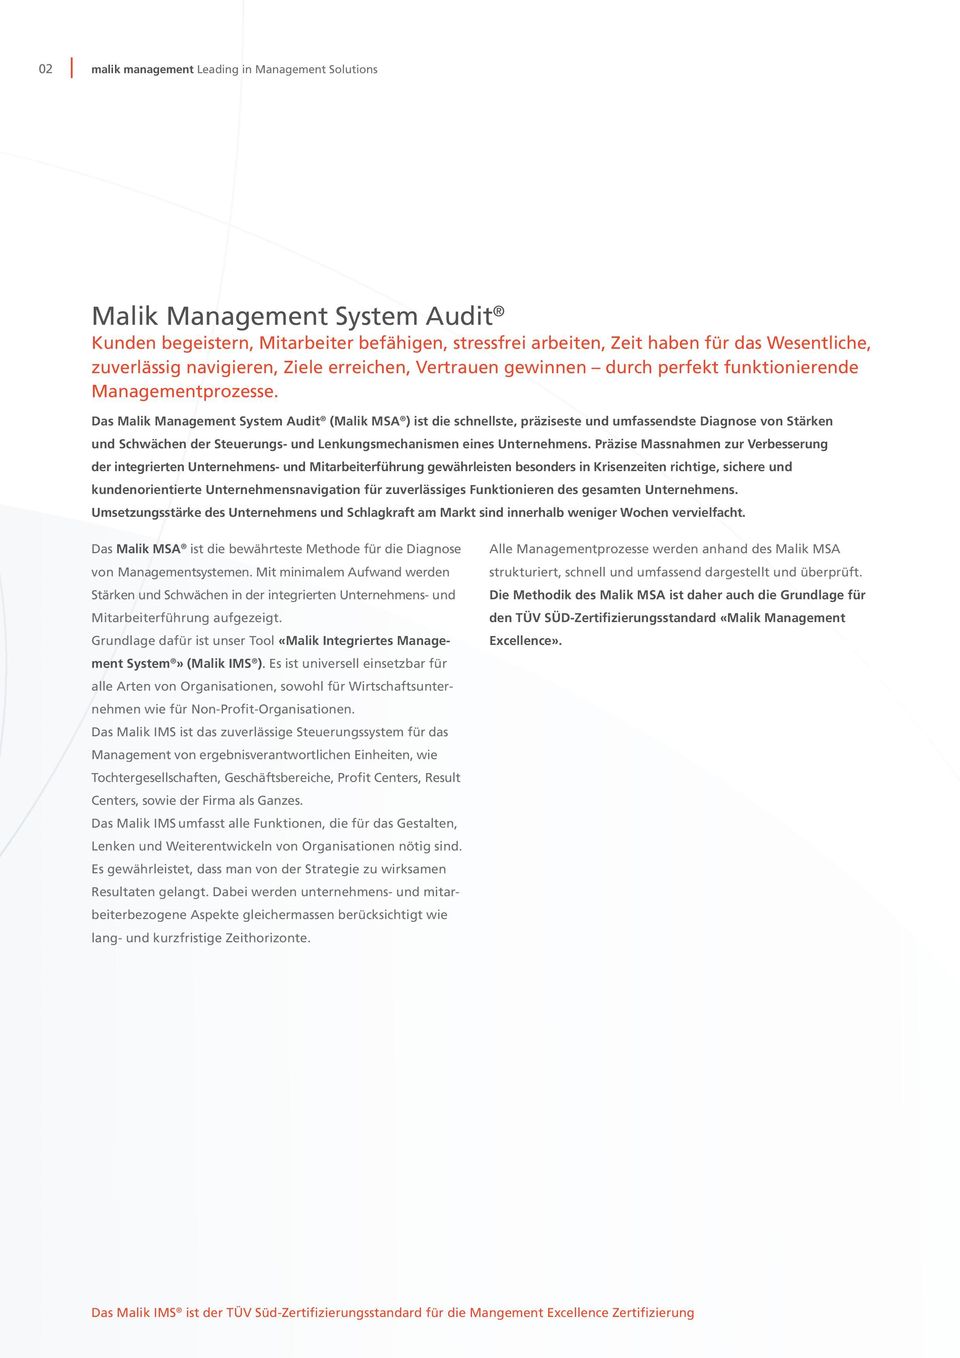 Das Malik Management System Audit (Malik MSA ) ist die schnellste, präziseste und umfassendste Diagnose von Stärken und Schwächen der Steuerungs- und Lenkungsmechanismen eines Unternehmens.